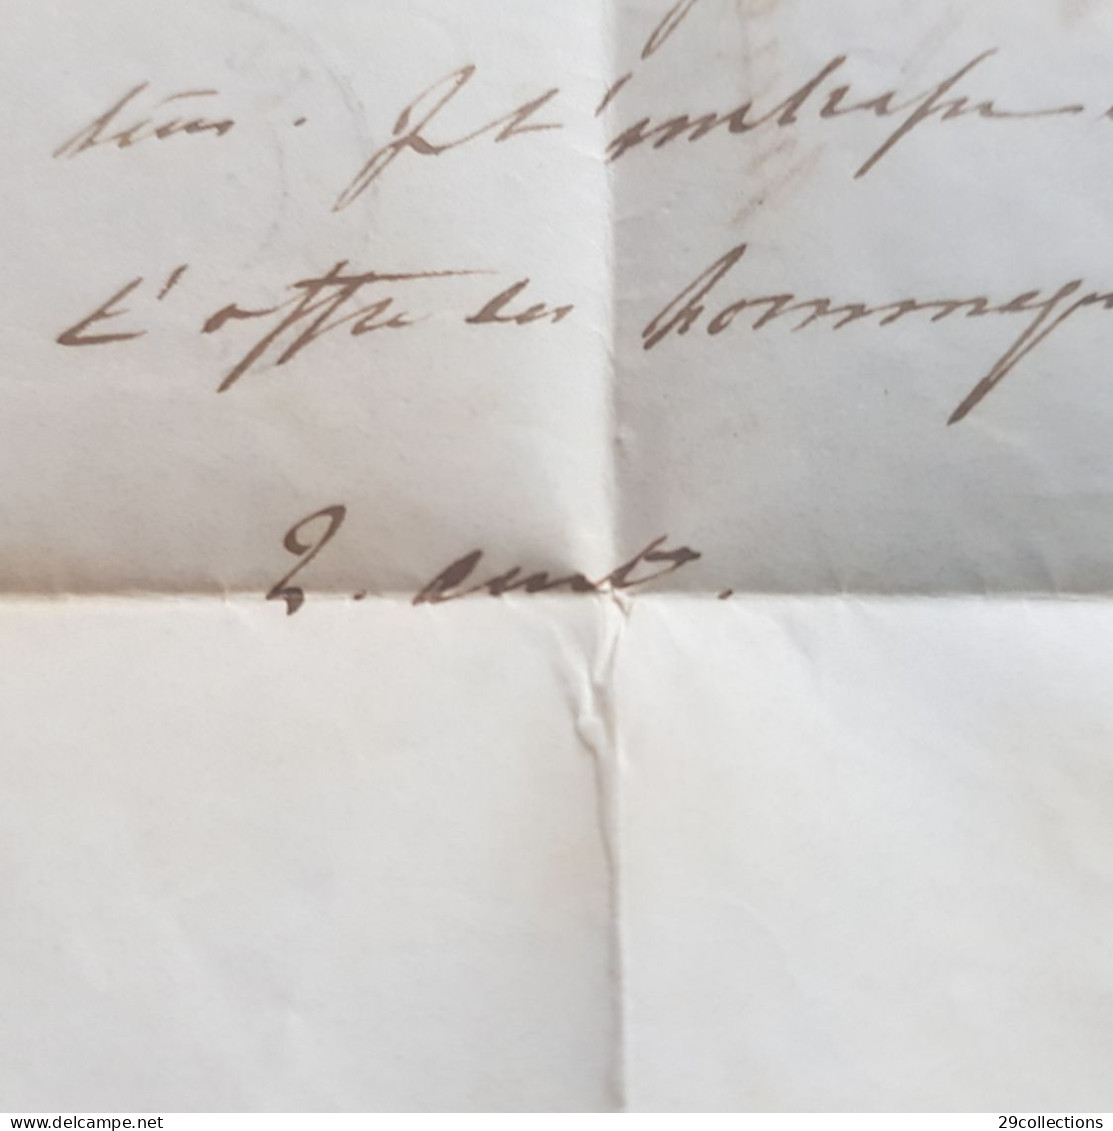 Lettre 1851 au Comte Paul DE CHAMPAGNY (1809-1893) filleul de Jérôme & Pauline BONAPARTE, neveu de l'Empereur NAPOLEON